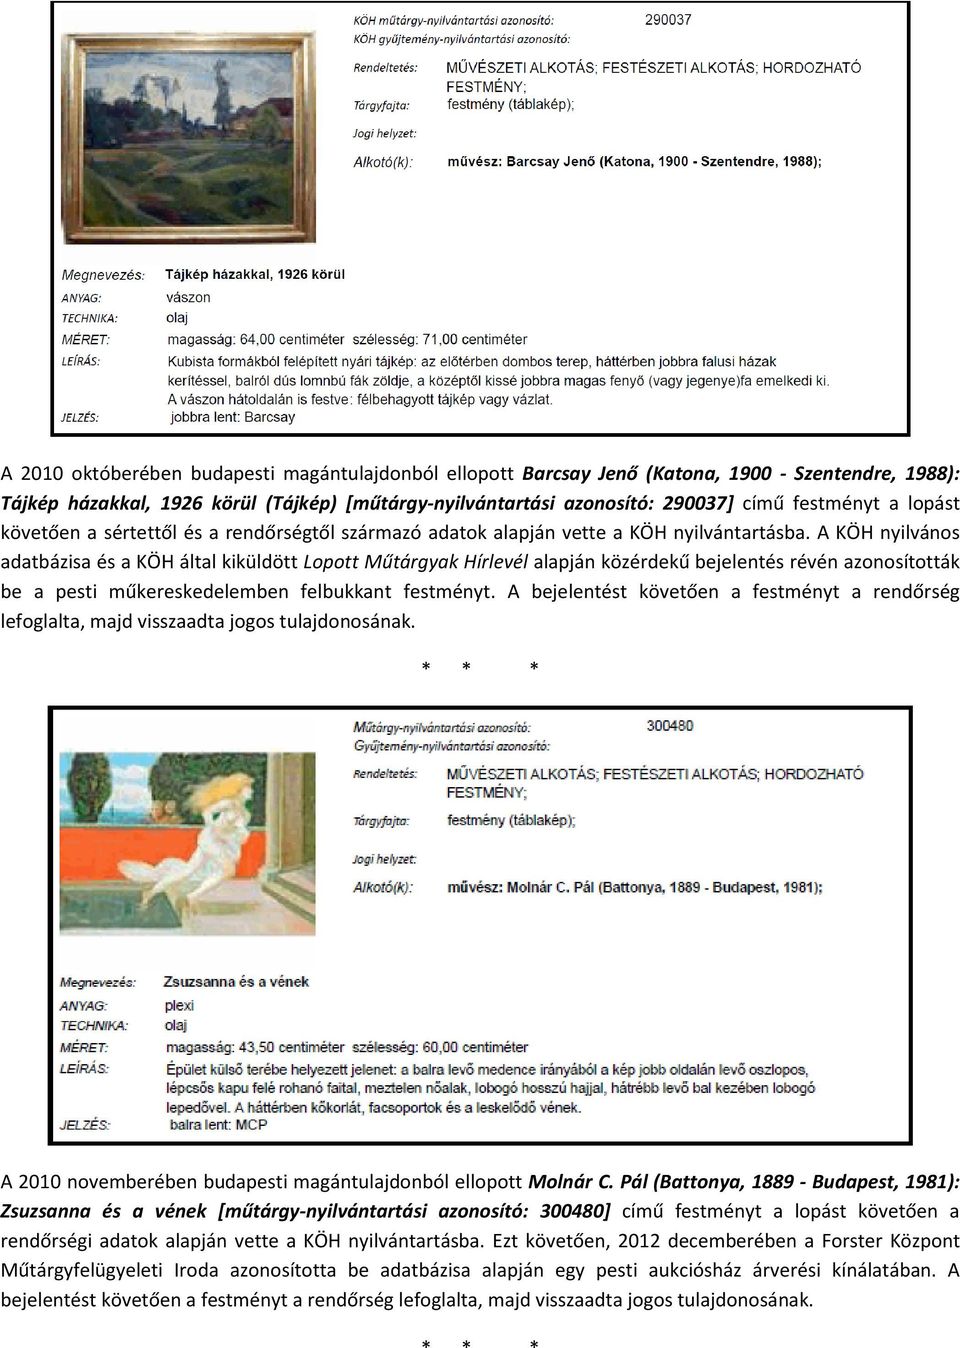 A KÖH nyilvános adatbázisa és a KÖH által kiküldött Lopott Műtárgyak Hírlevél alapján közérdekű bejelentés révén azonosították be a pesti műkereskedelemben felbukkant festményt.